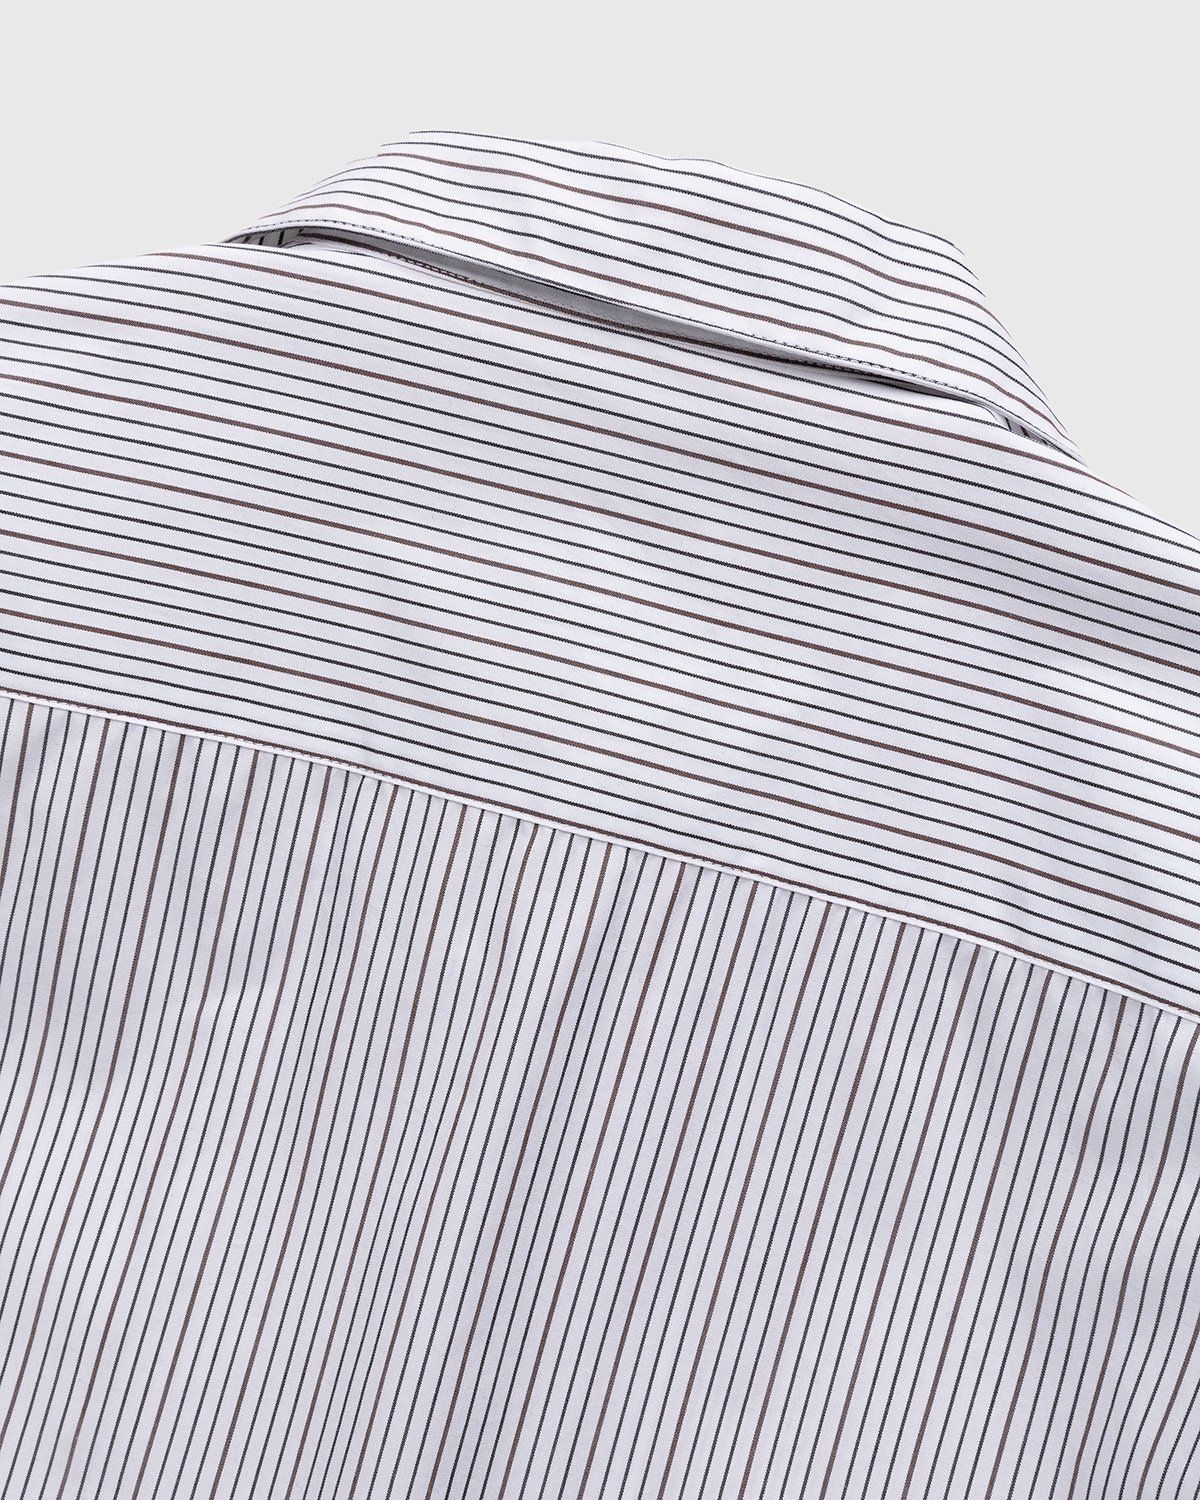 Highsnobiety – Striped Poplin Short-Sleeve Shirt White/Black - Shirts - White - Image 4